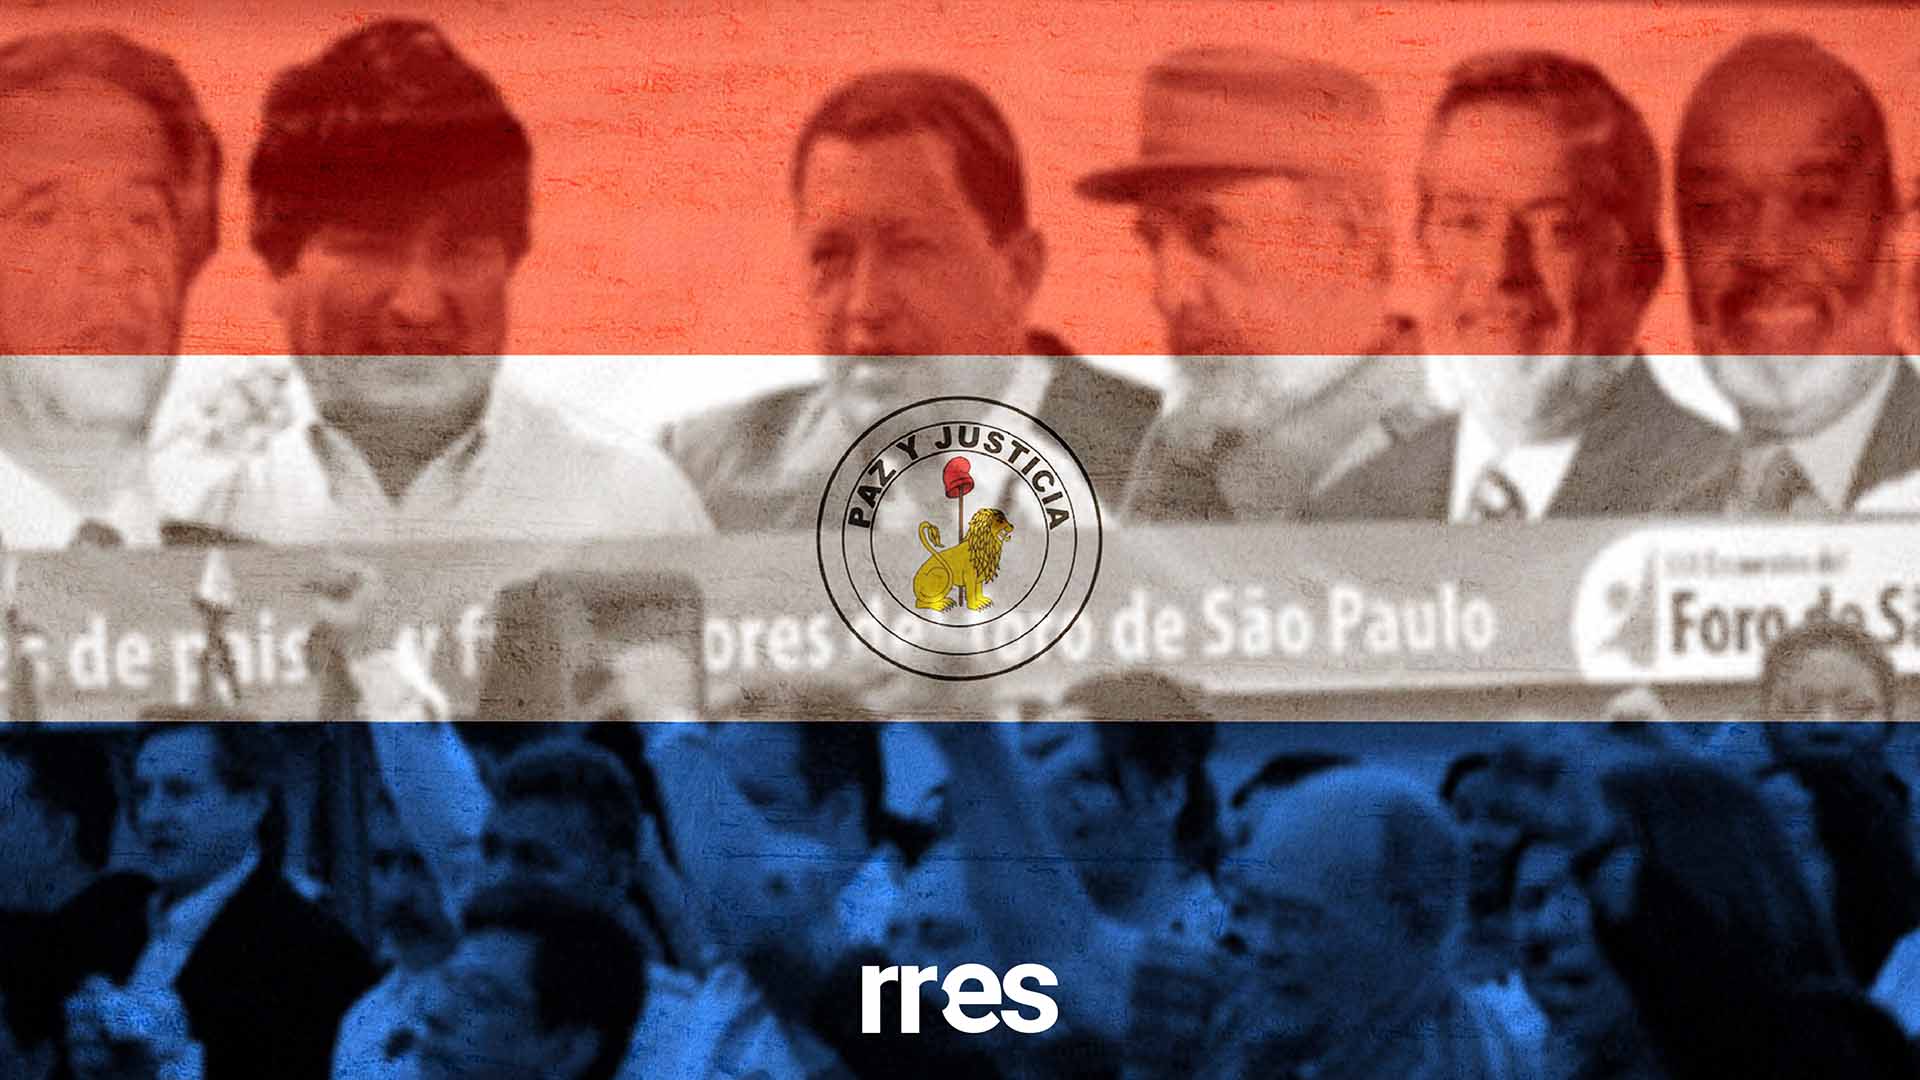 El cinismo paulista se instala en Paraguay, por Asdrúbal Aguiar